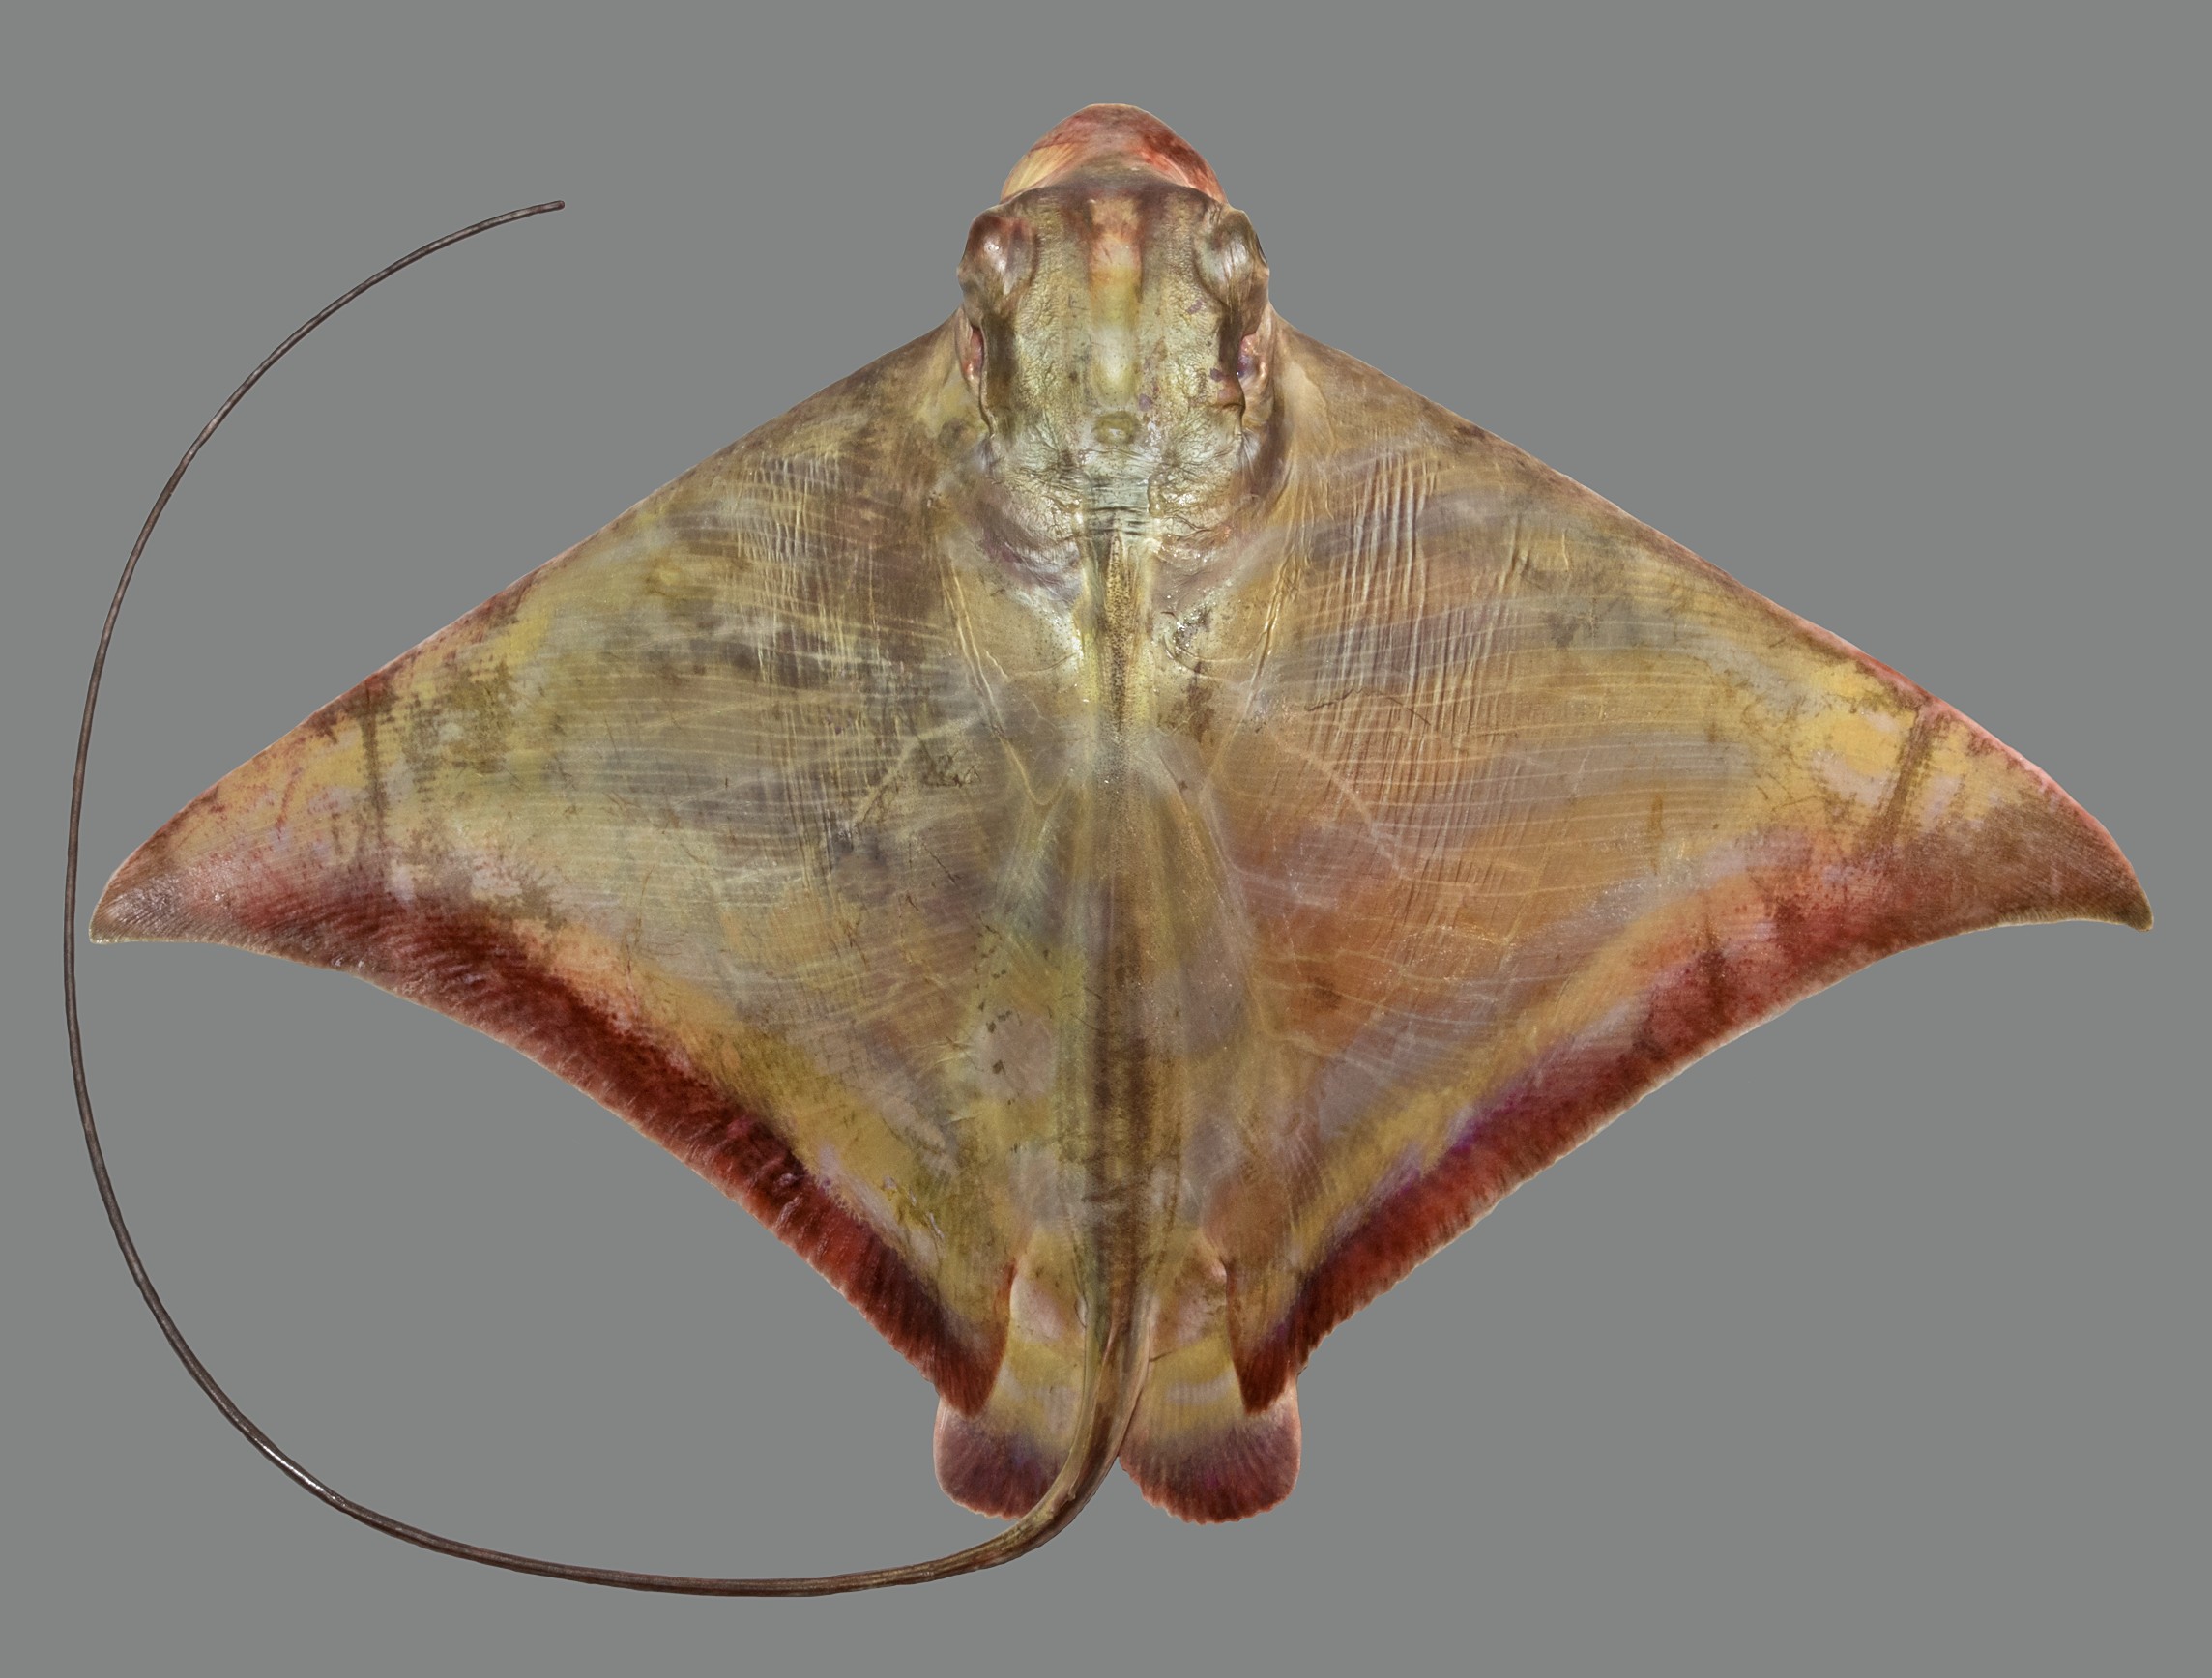 Aetomylaeus nichofii, female, 54 cm DW, Qatar; S.V. Bogorodsky